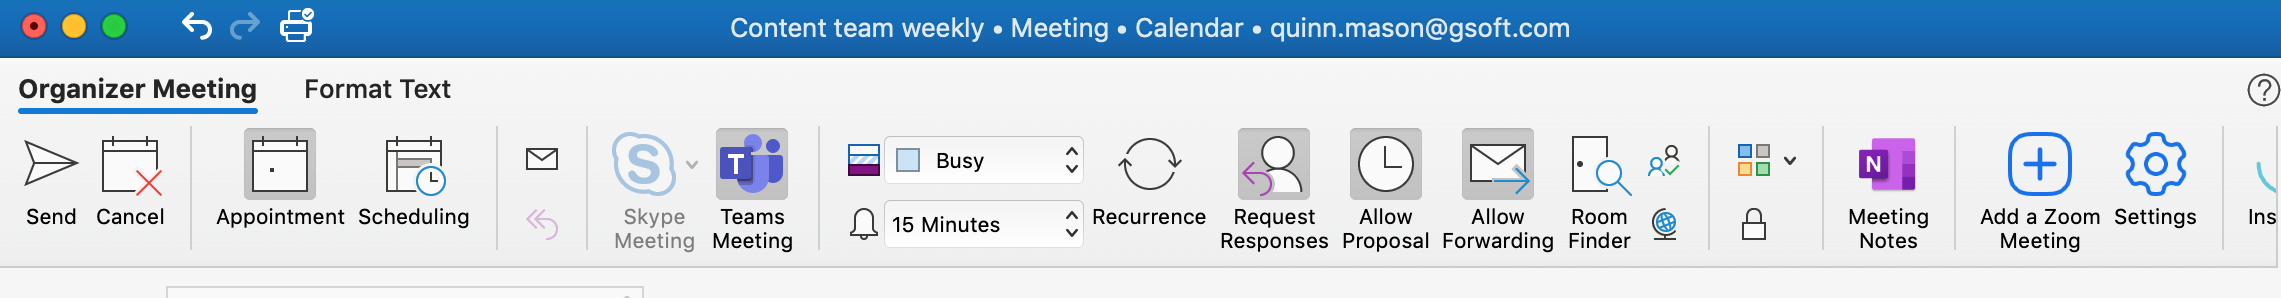 Meeting scheduler Outlook